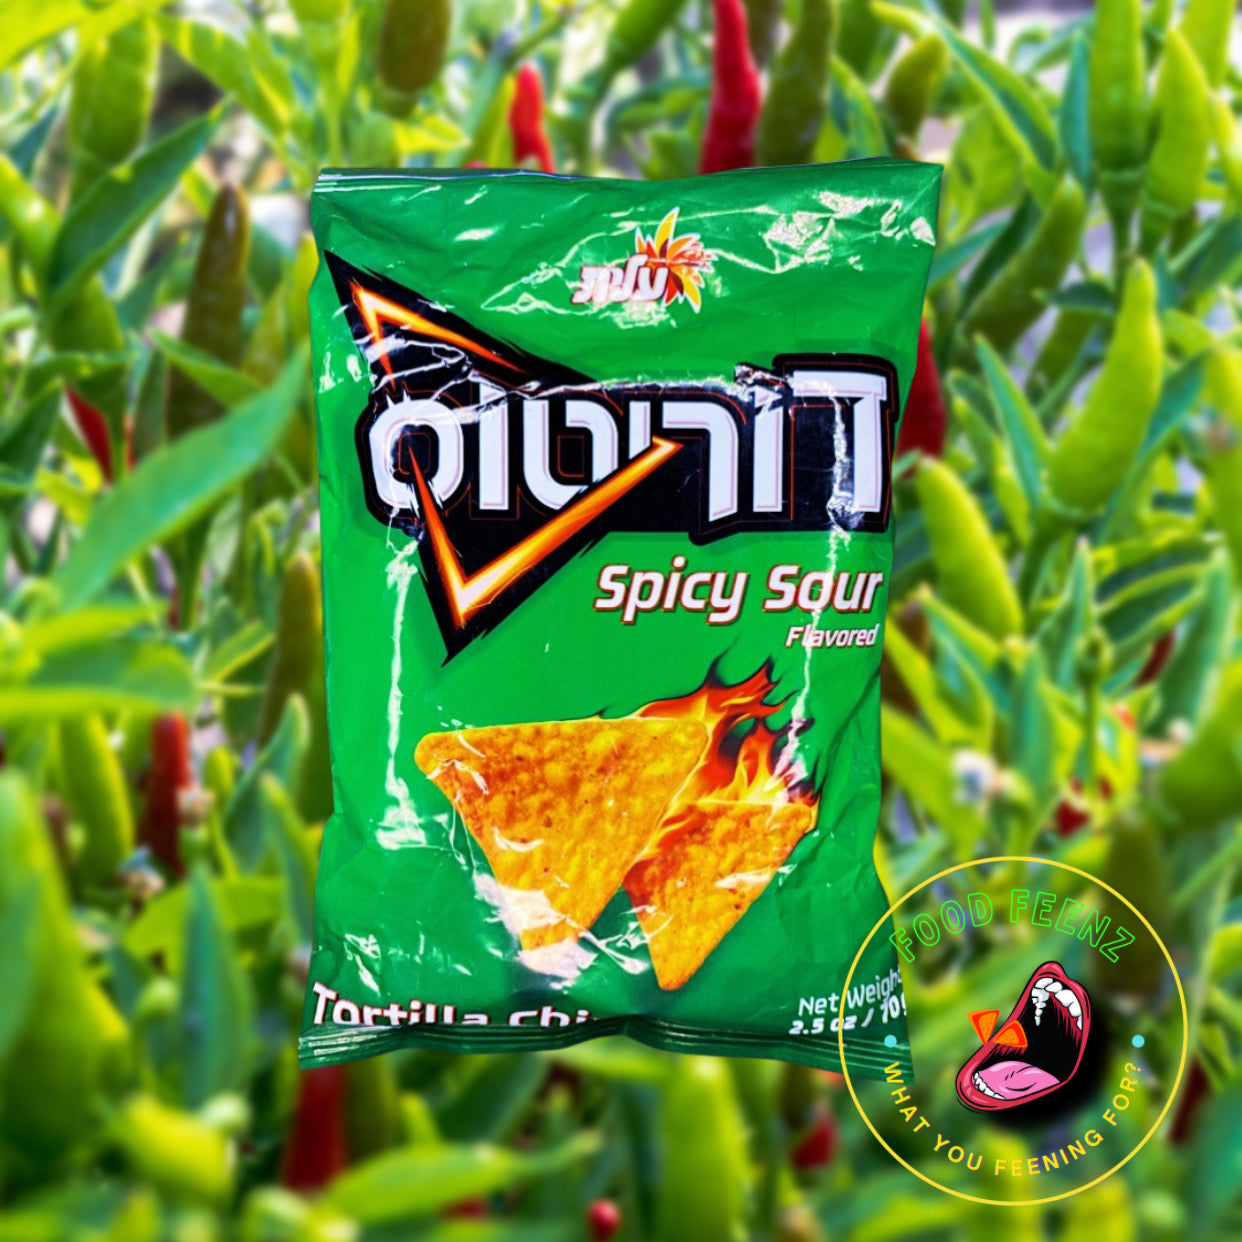 Doritos Spicy Sour (Israel)